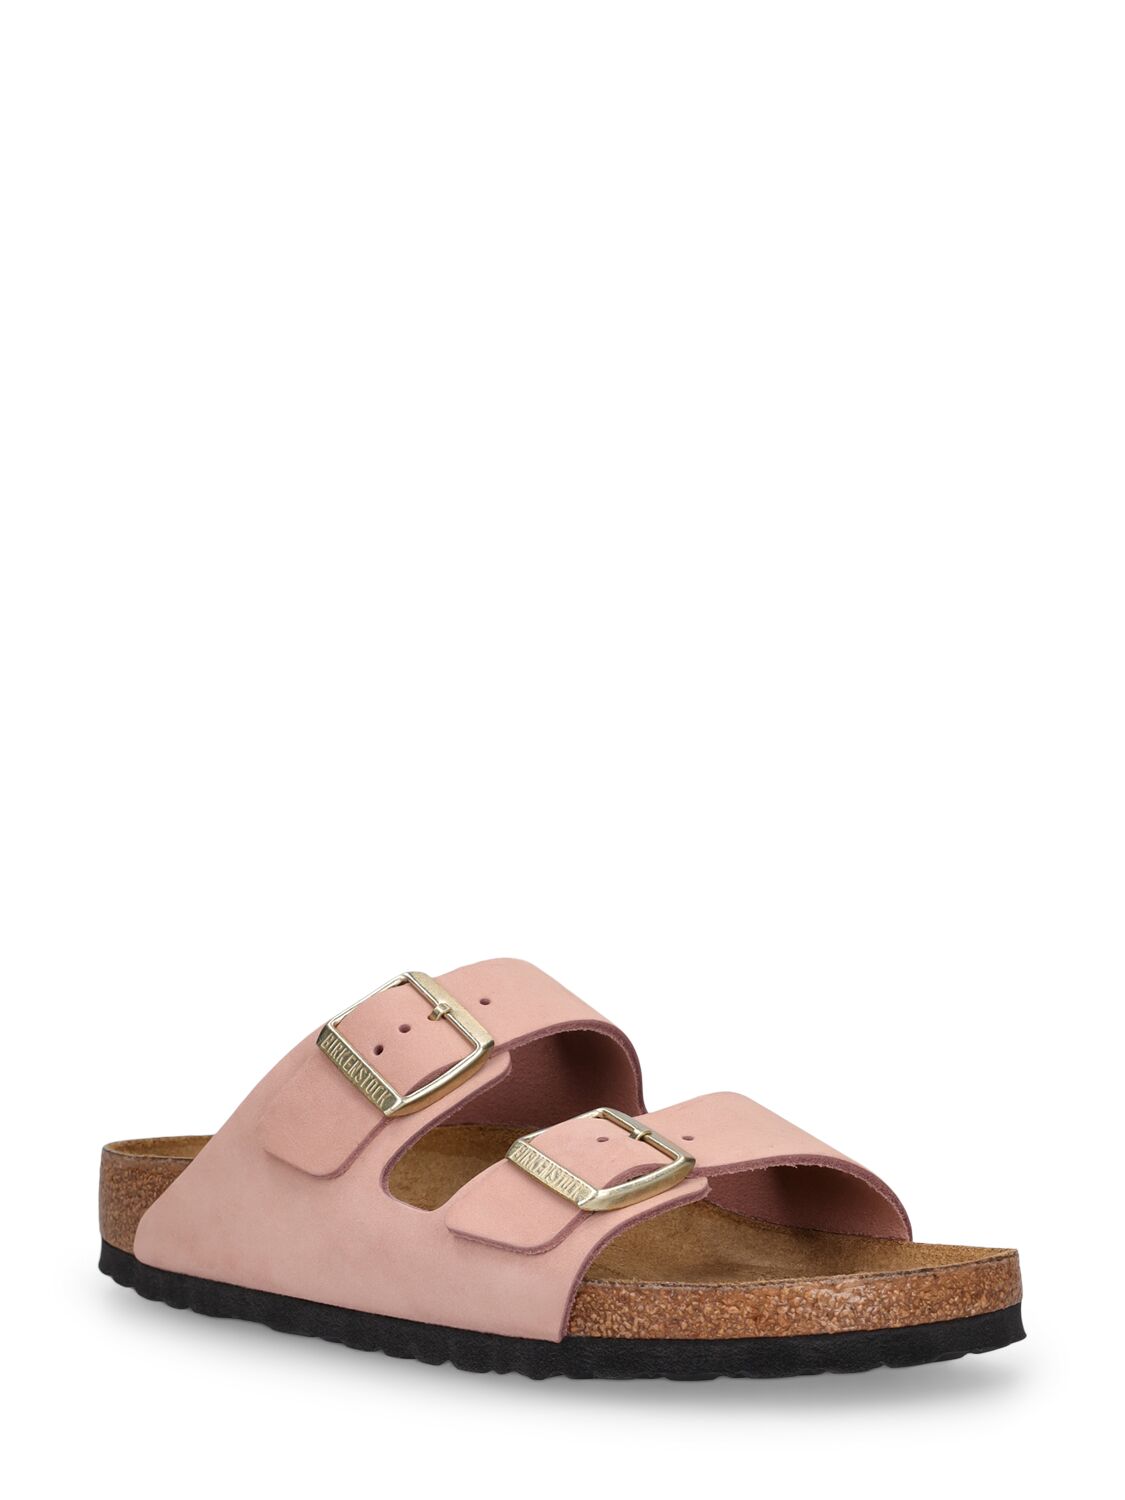 Shop Birkenstock Arizona Nubuck Sandals In Pink